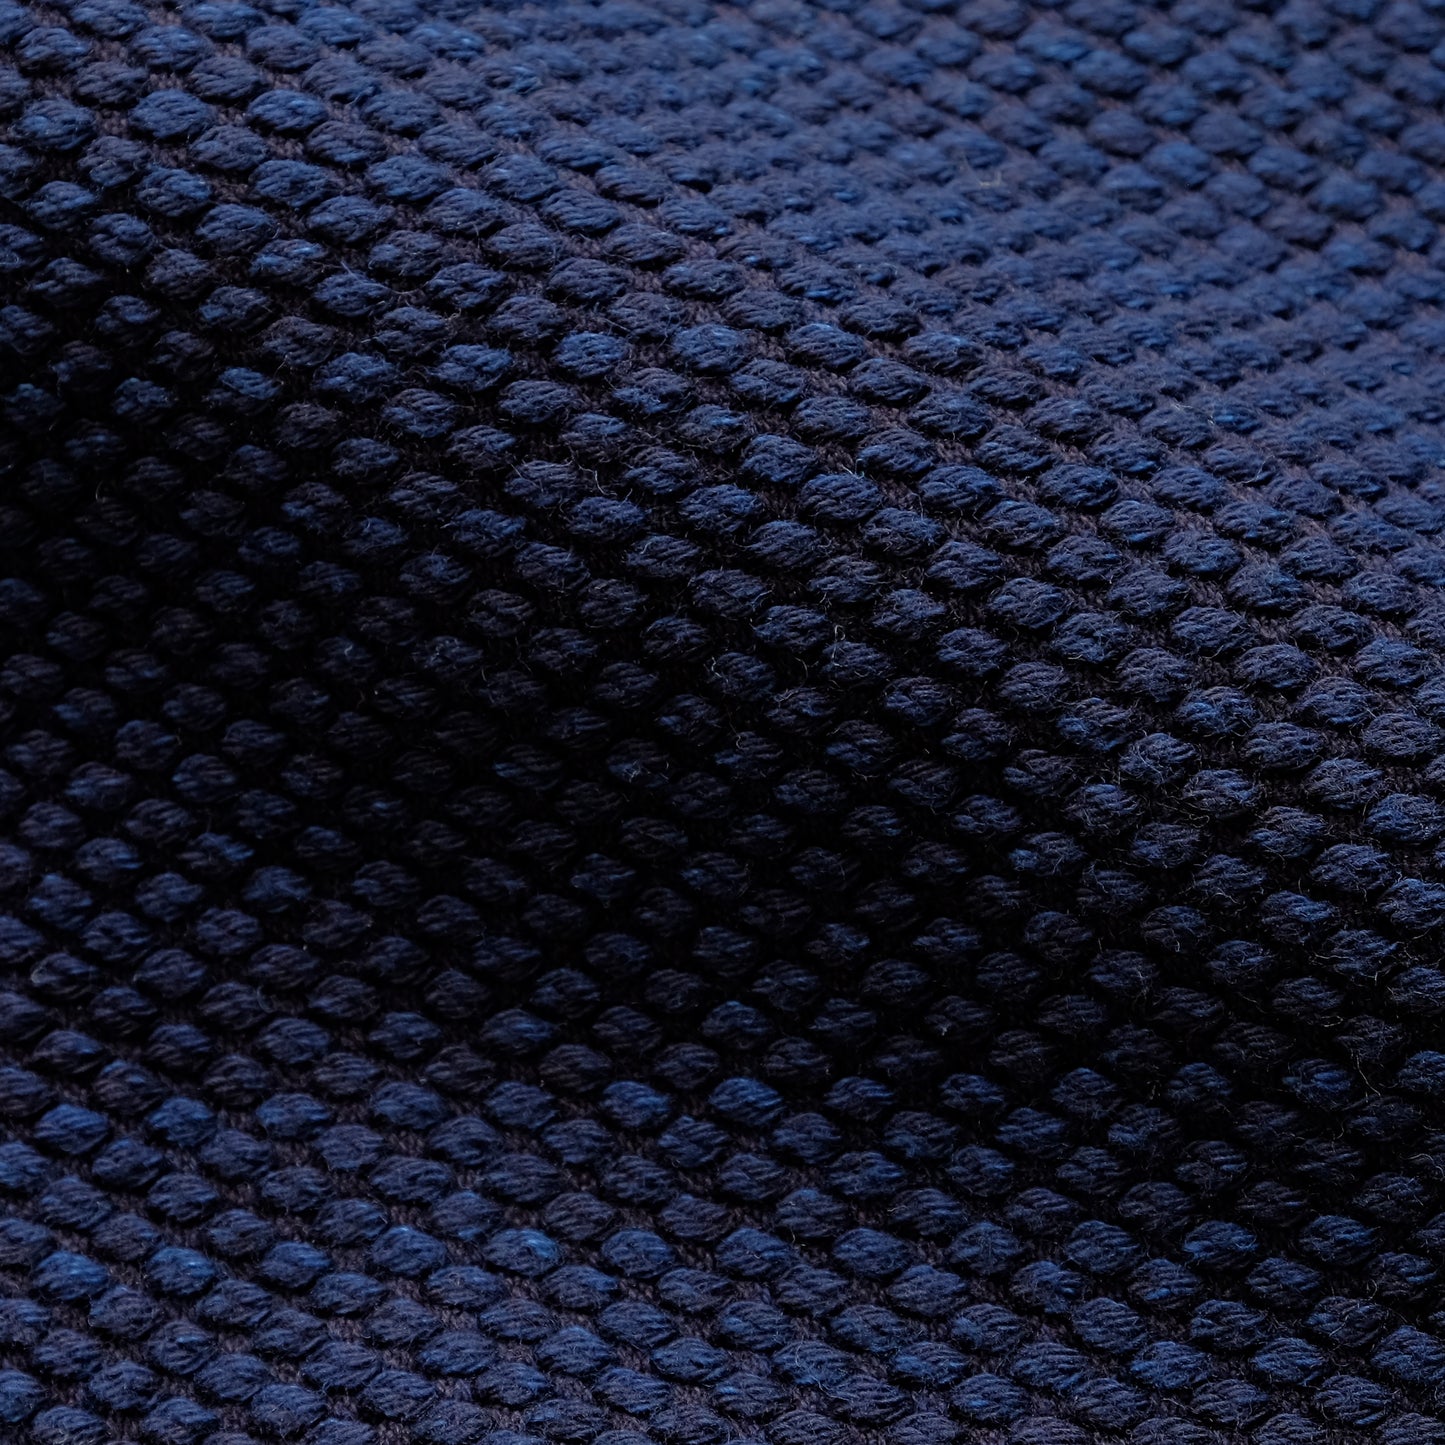 頭陀袋 横型 藍染め（濃紺/dark indigo blue）二重刺地ウォッシュ加工 日本製